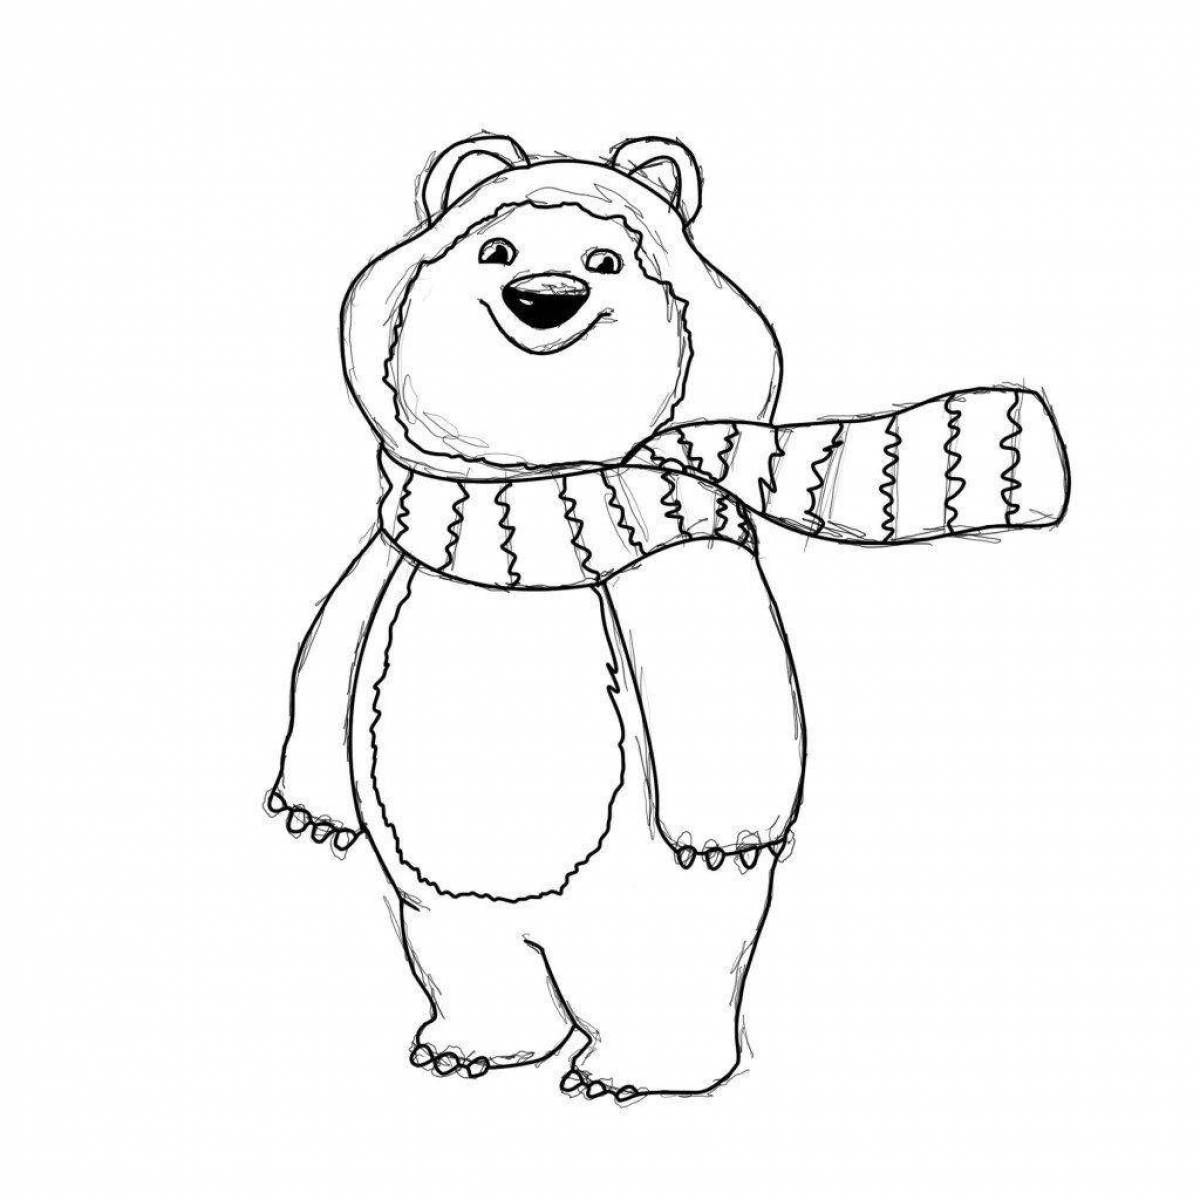 Красочный олимпийский медведь раскраска для детей